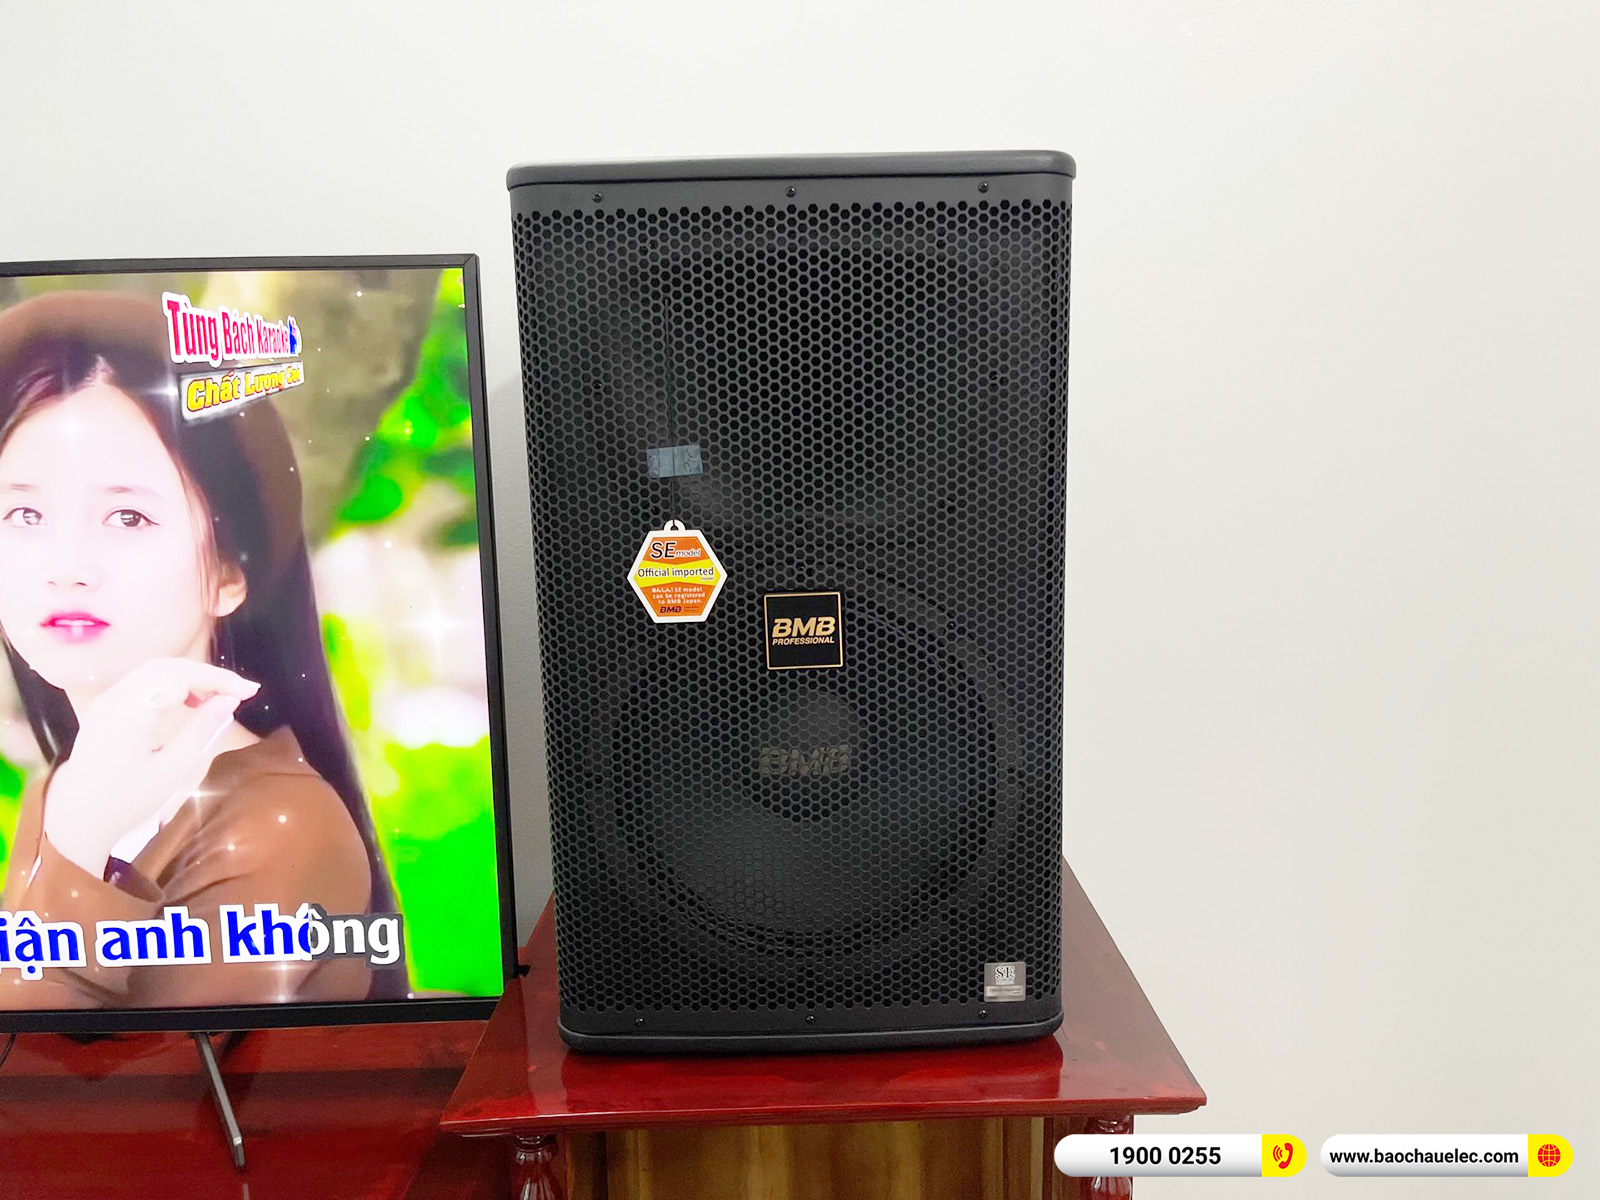 Lắp đặt dàn karaoke BMB hơn 55tr cho anh Yên tại Hưng Yên